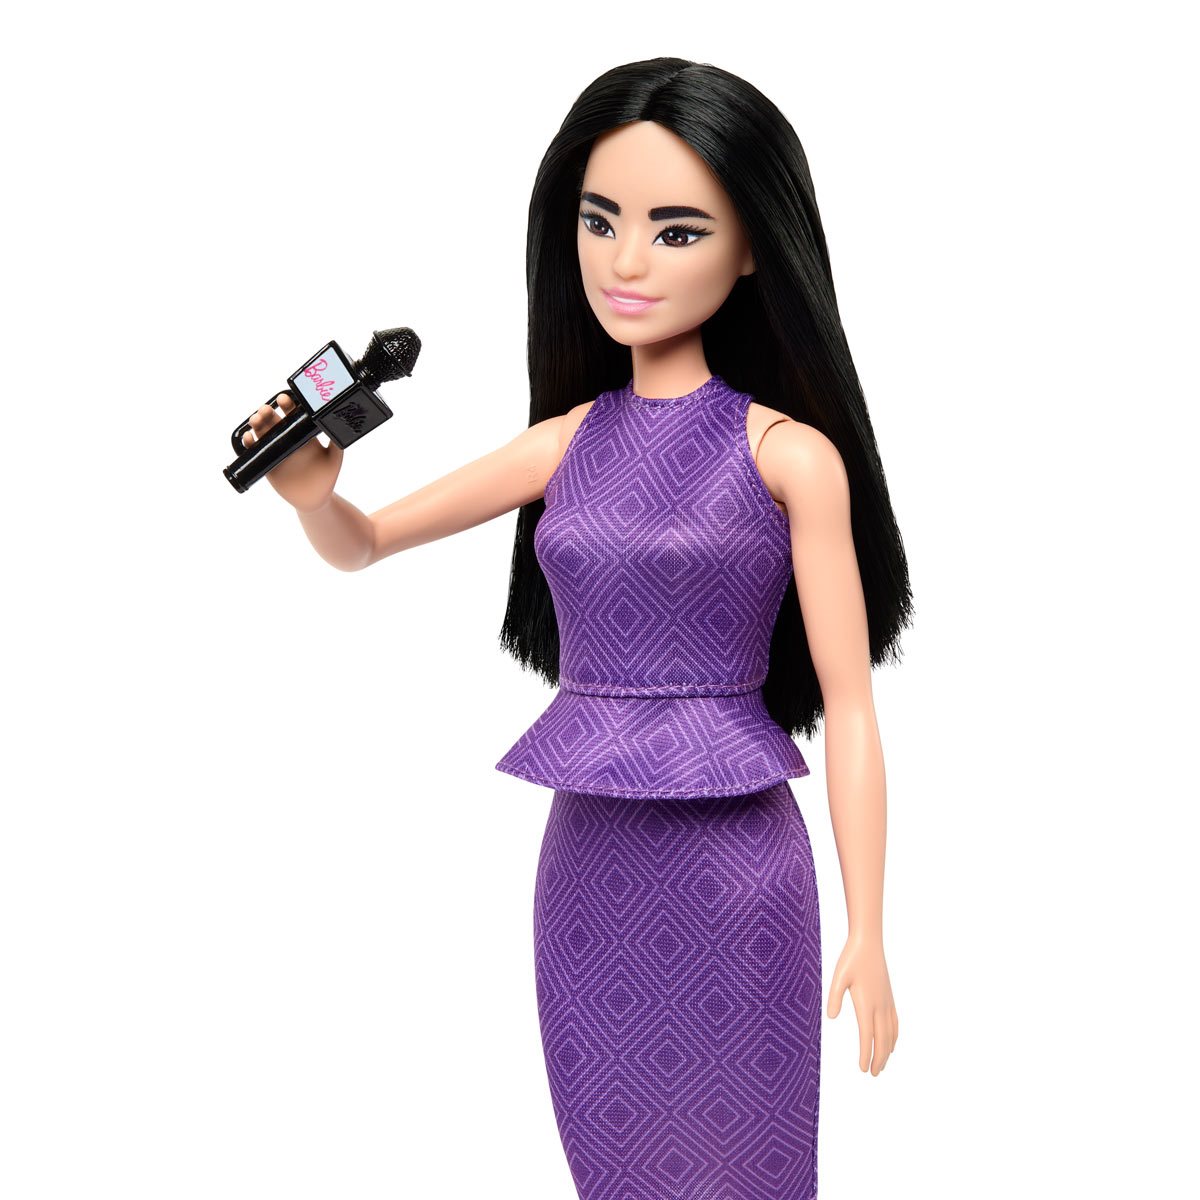 Poupée Barbie Fashionistas : Poupée noire avec robe colorée Mattel